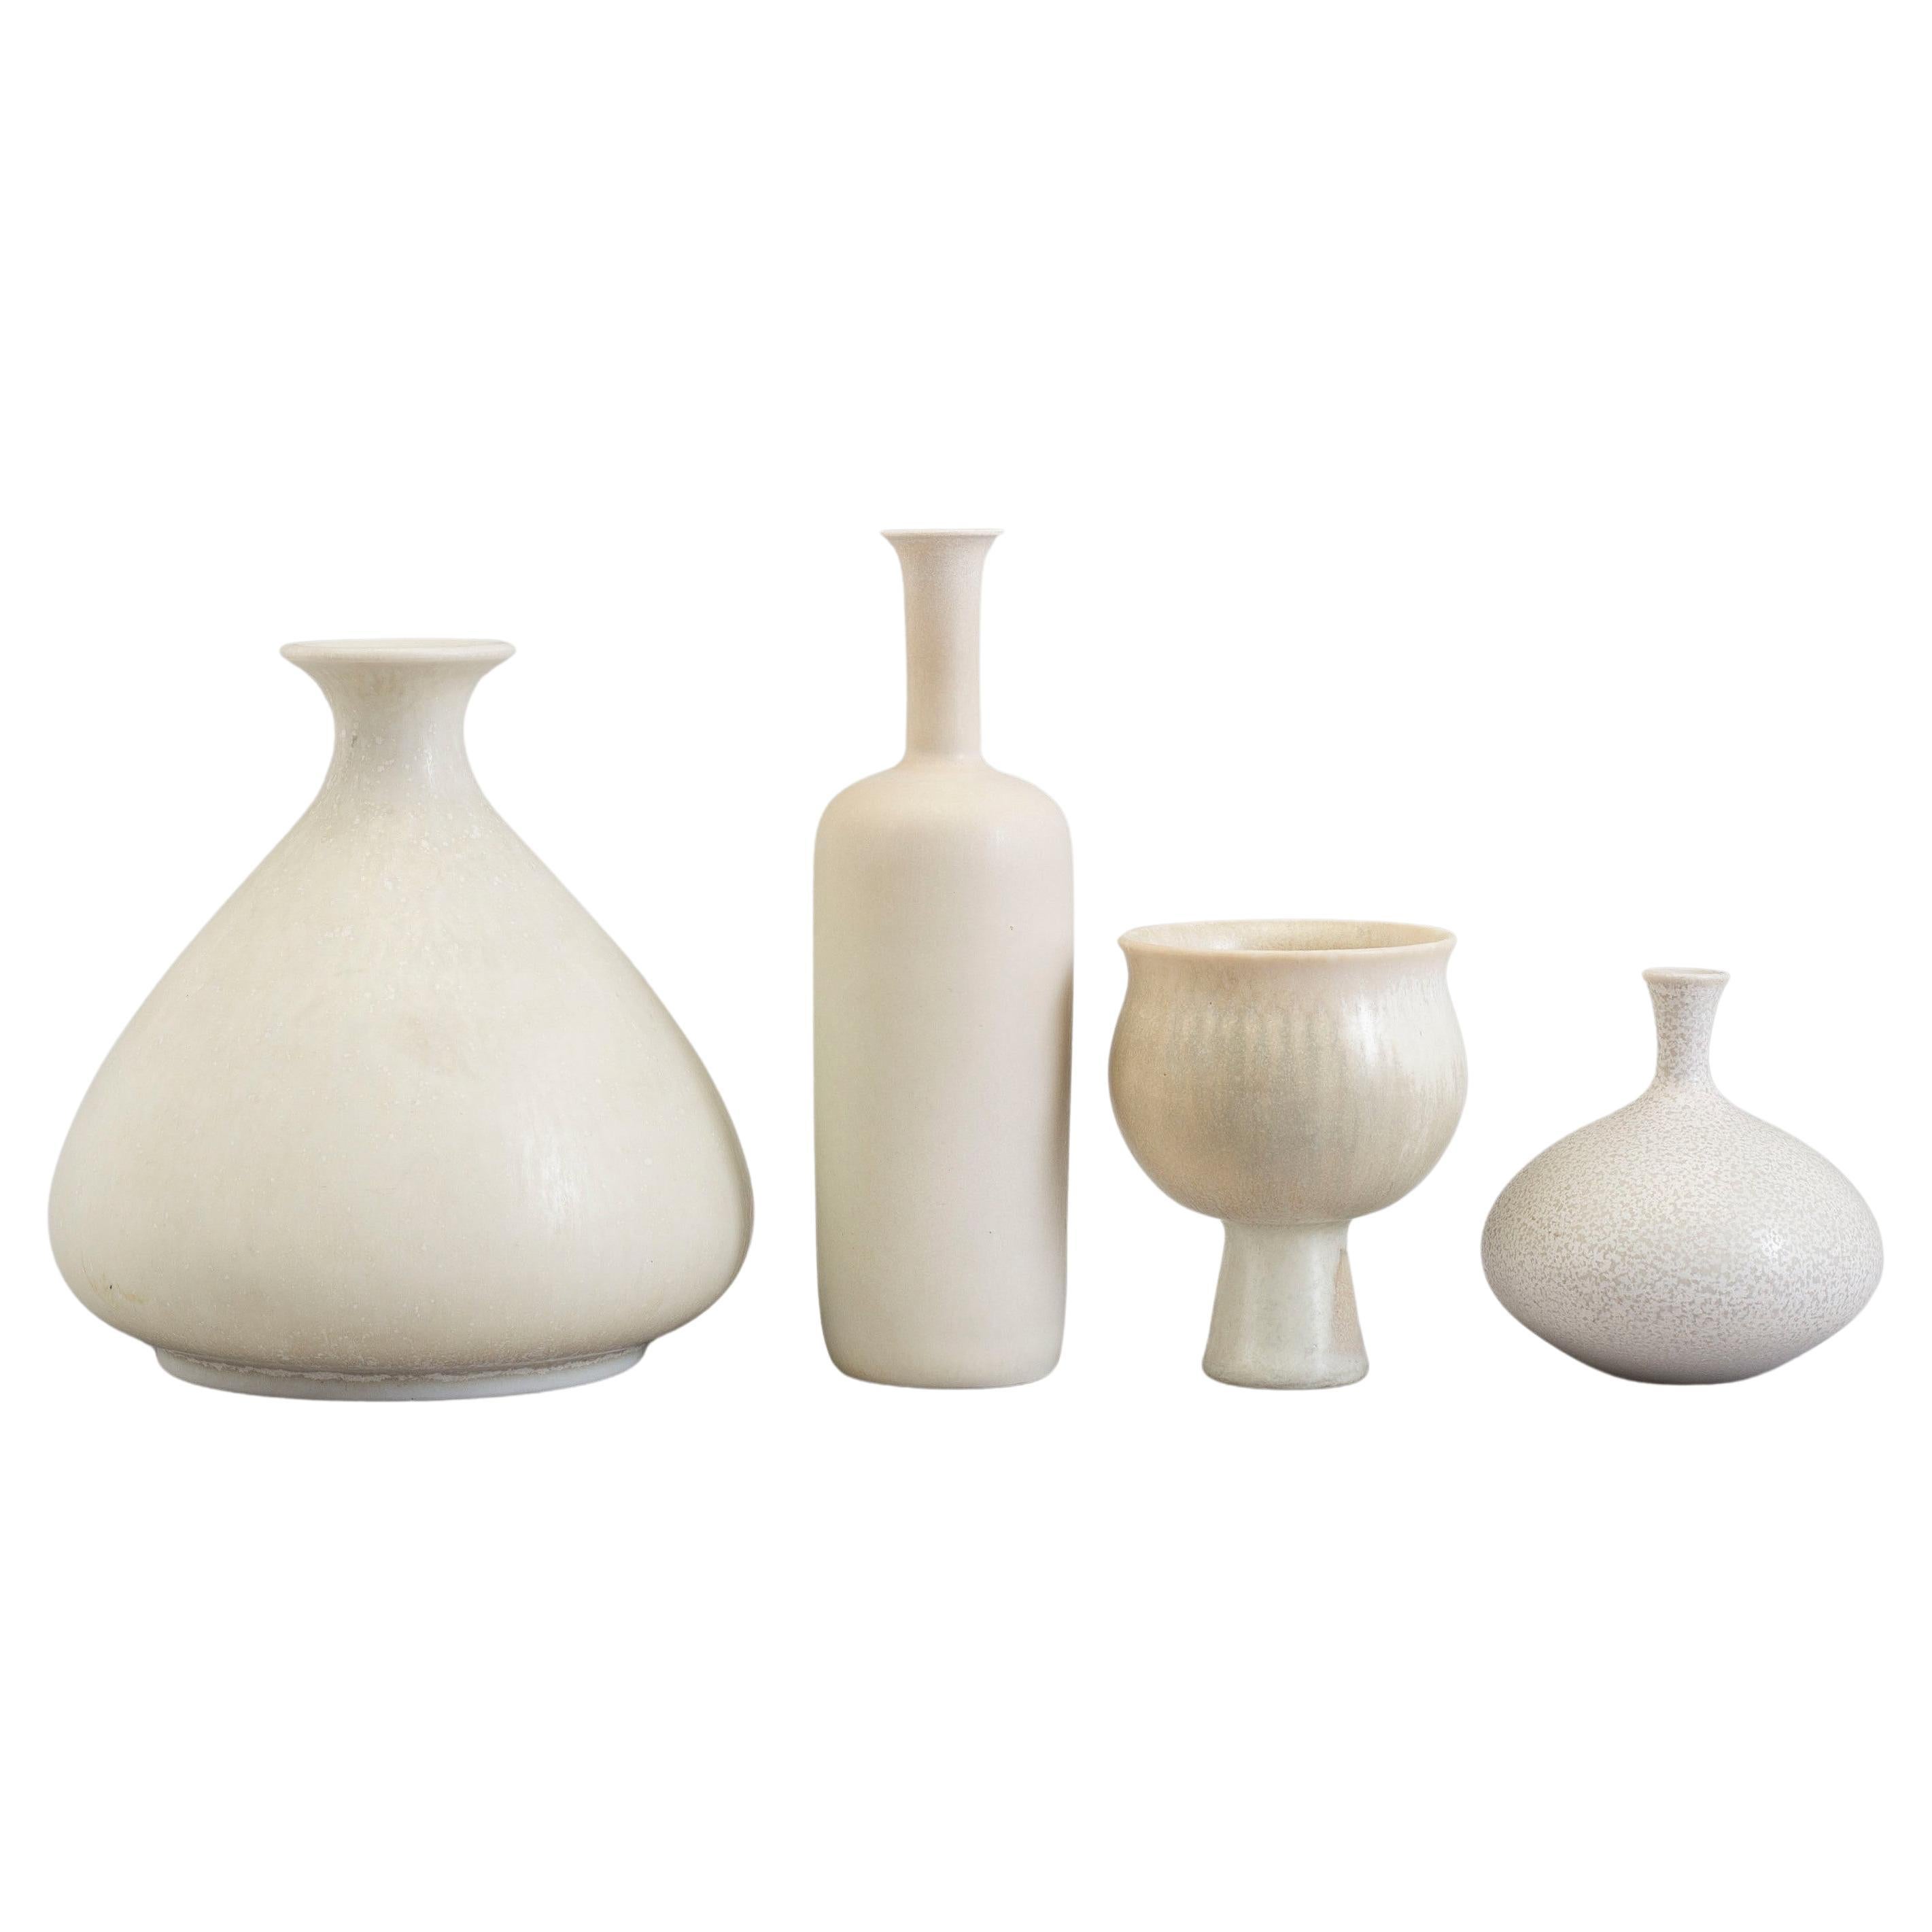 Set of 4 Ceramic Vases by Gunnar Nylund, Rörstrand, Sweden, 1950s For Sale